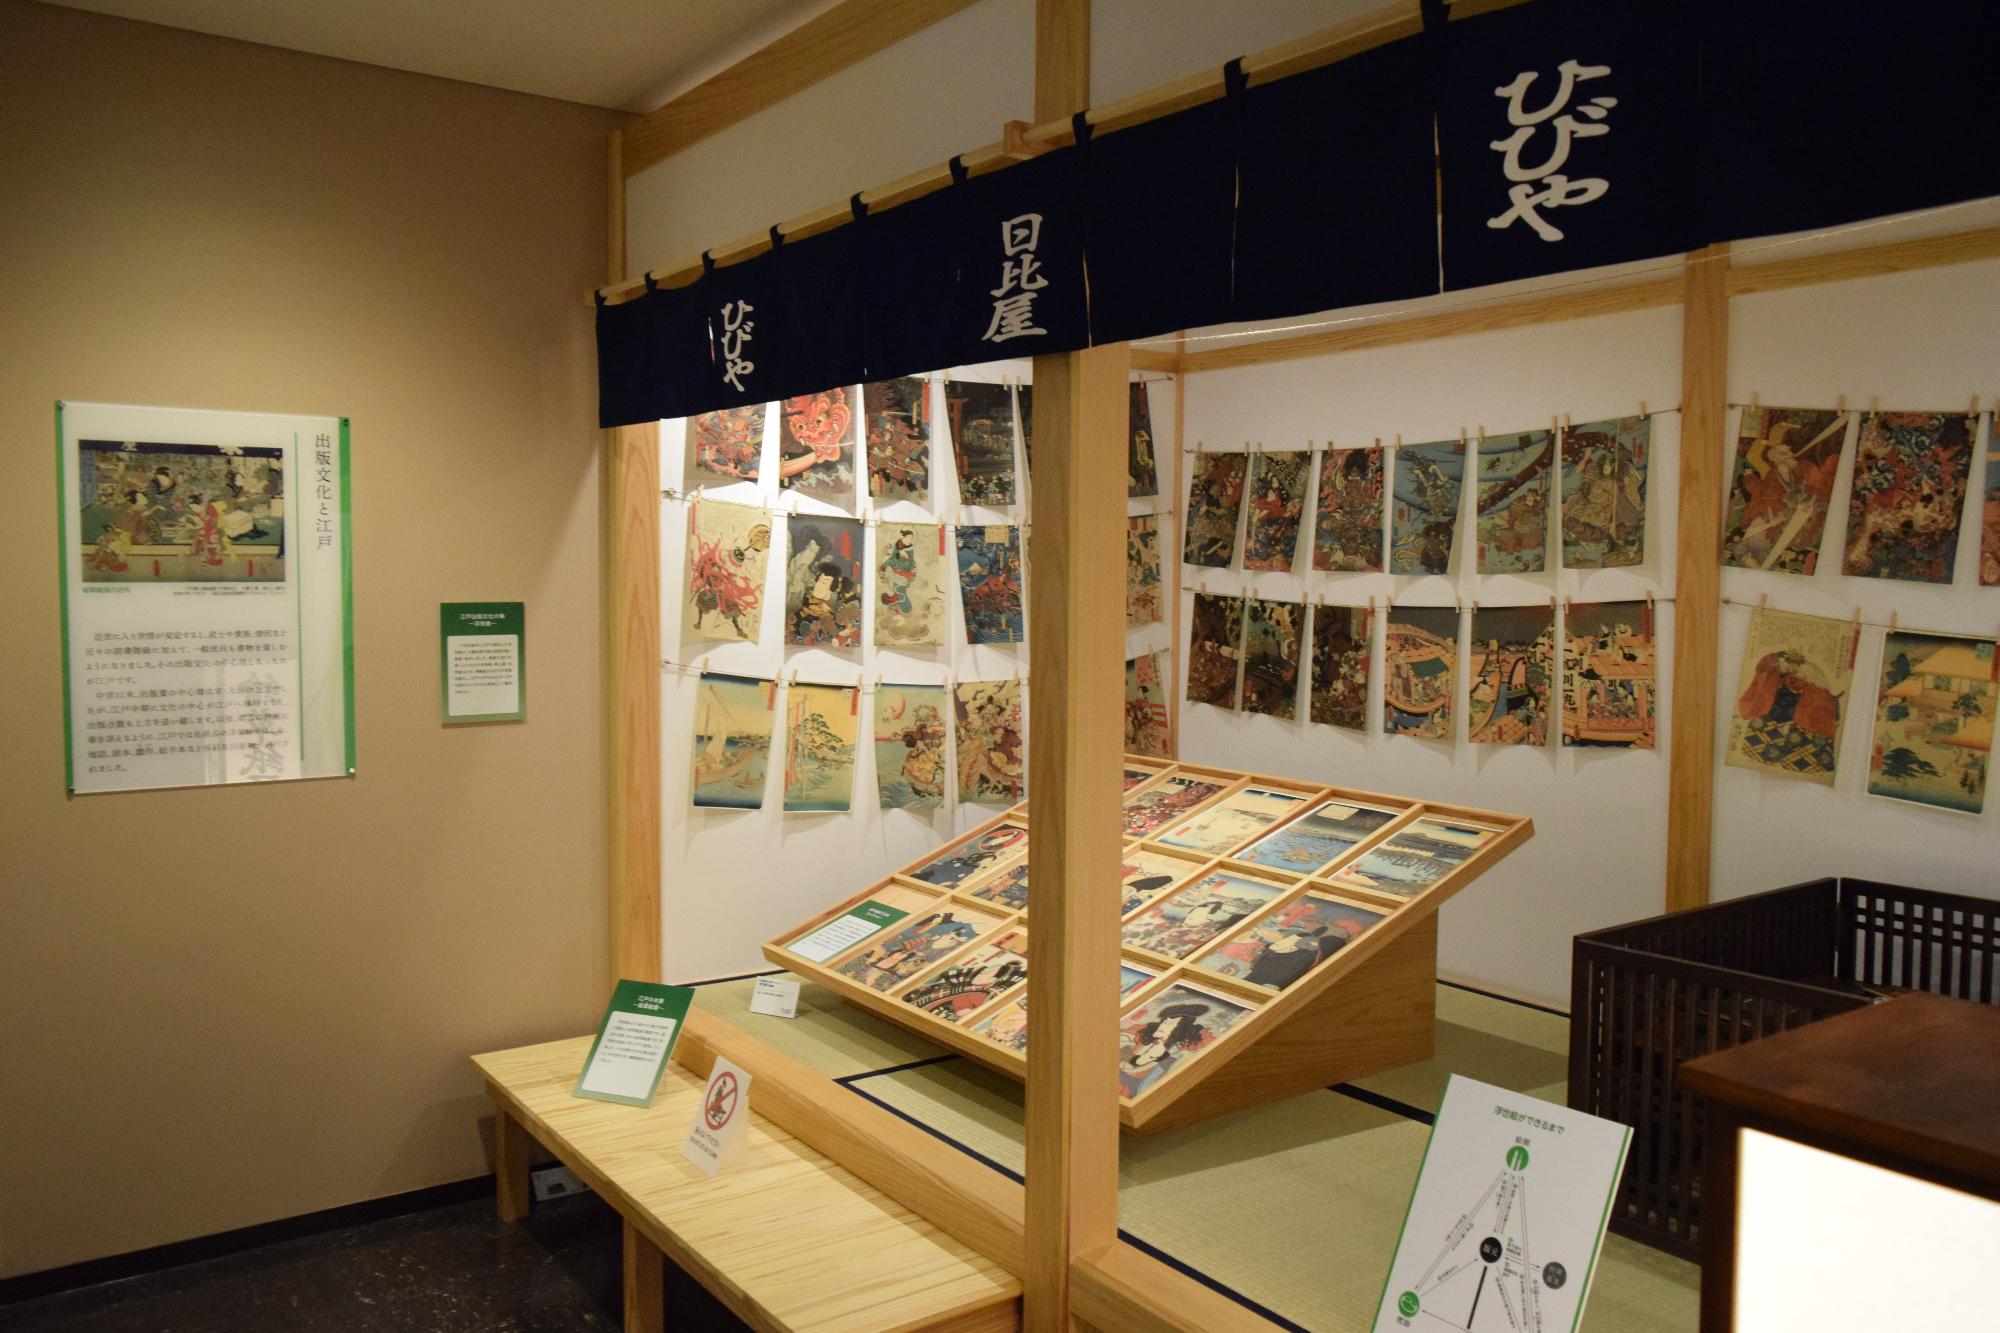 ひびやの暖簾がある和室の壁と畳の上にたくさんの資料が展示されている展示室の写真